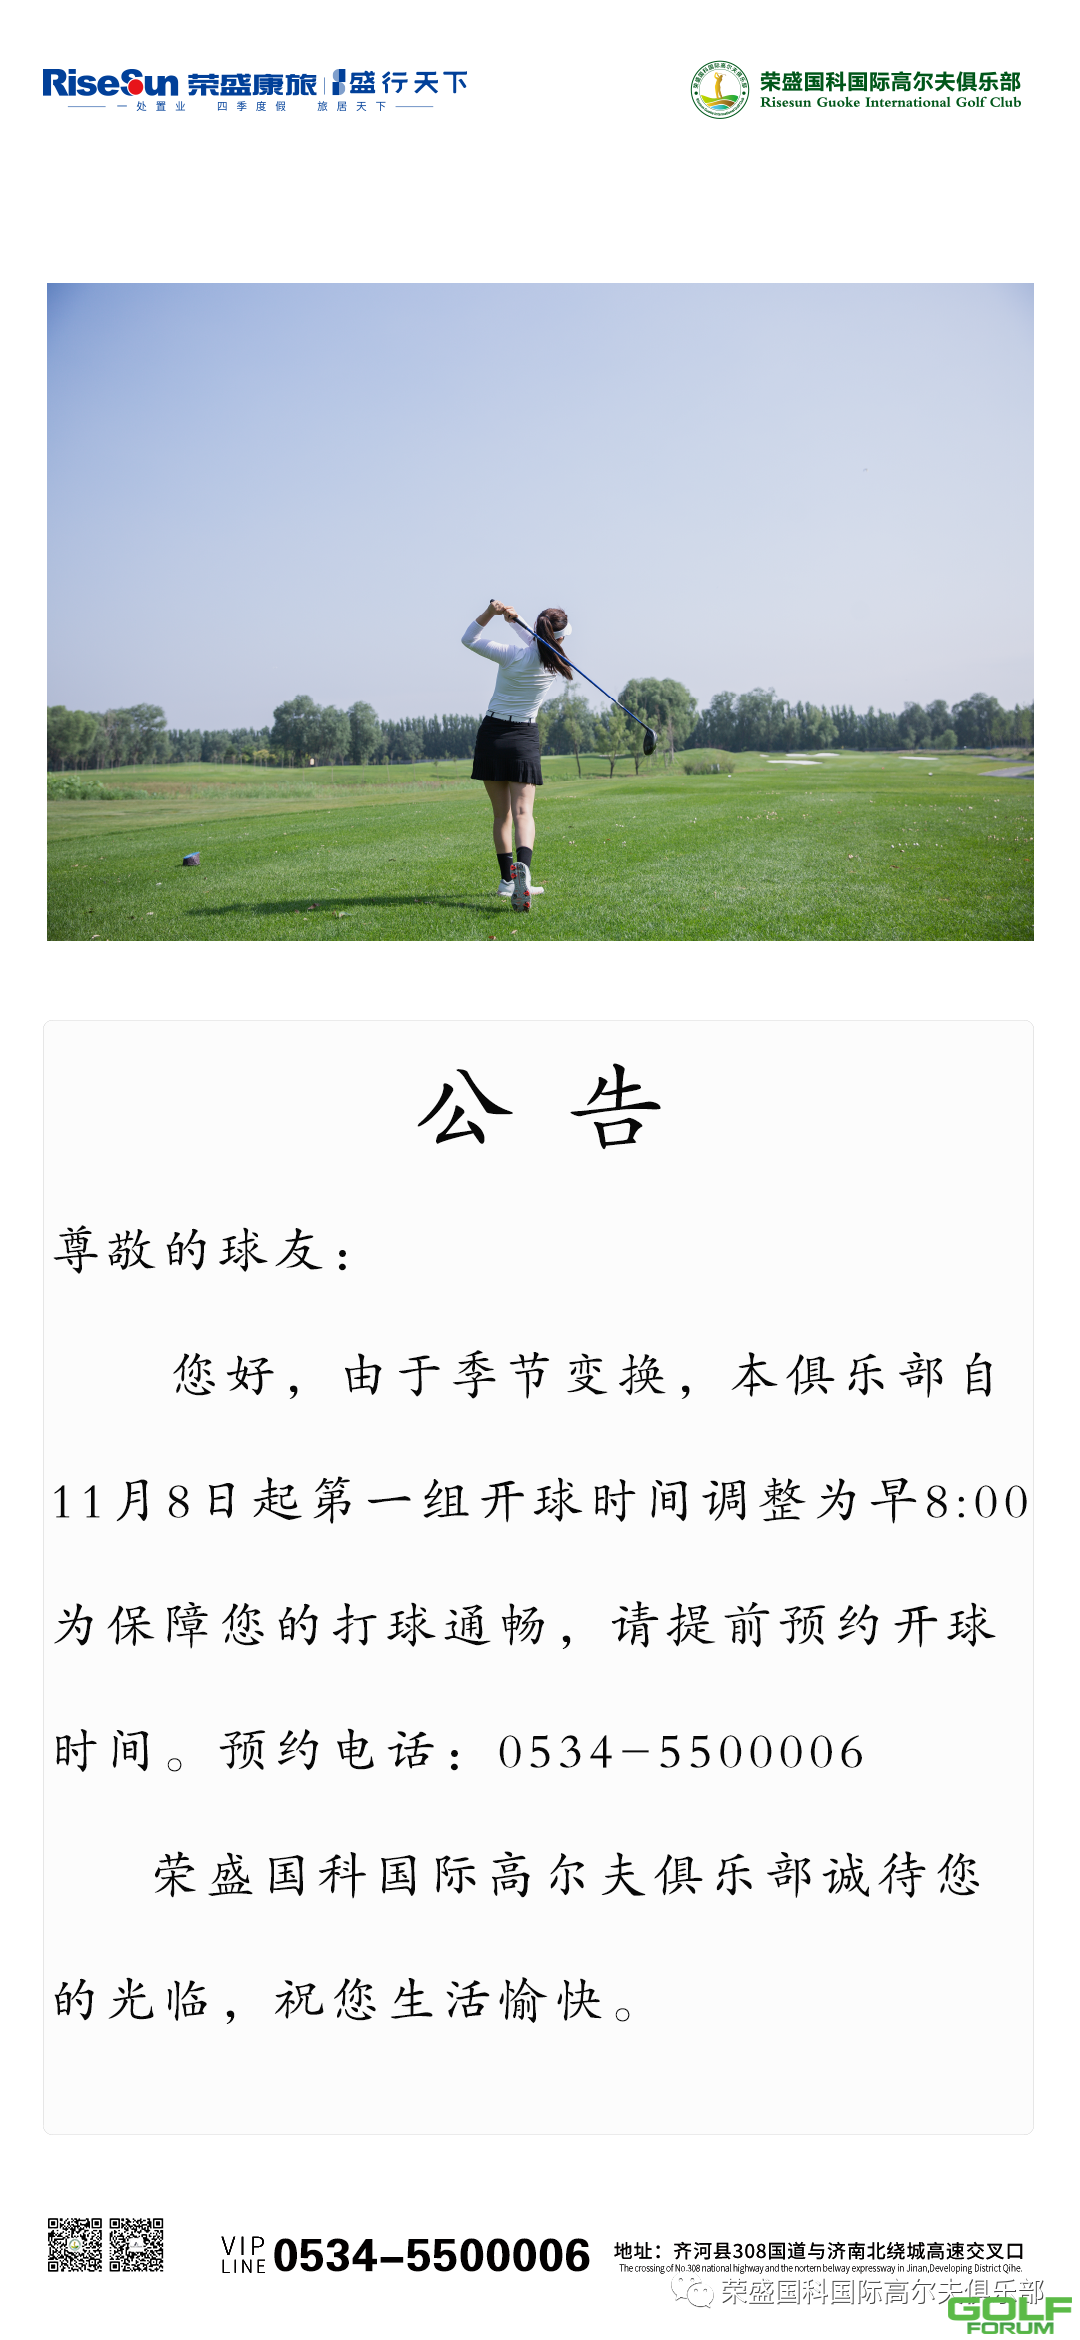 荣盛国科国际高尔夫俱乐部公告